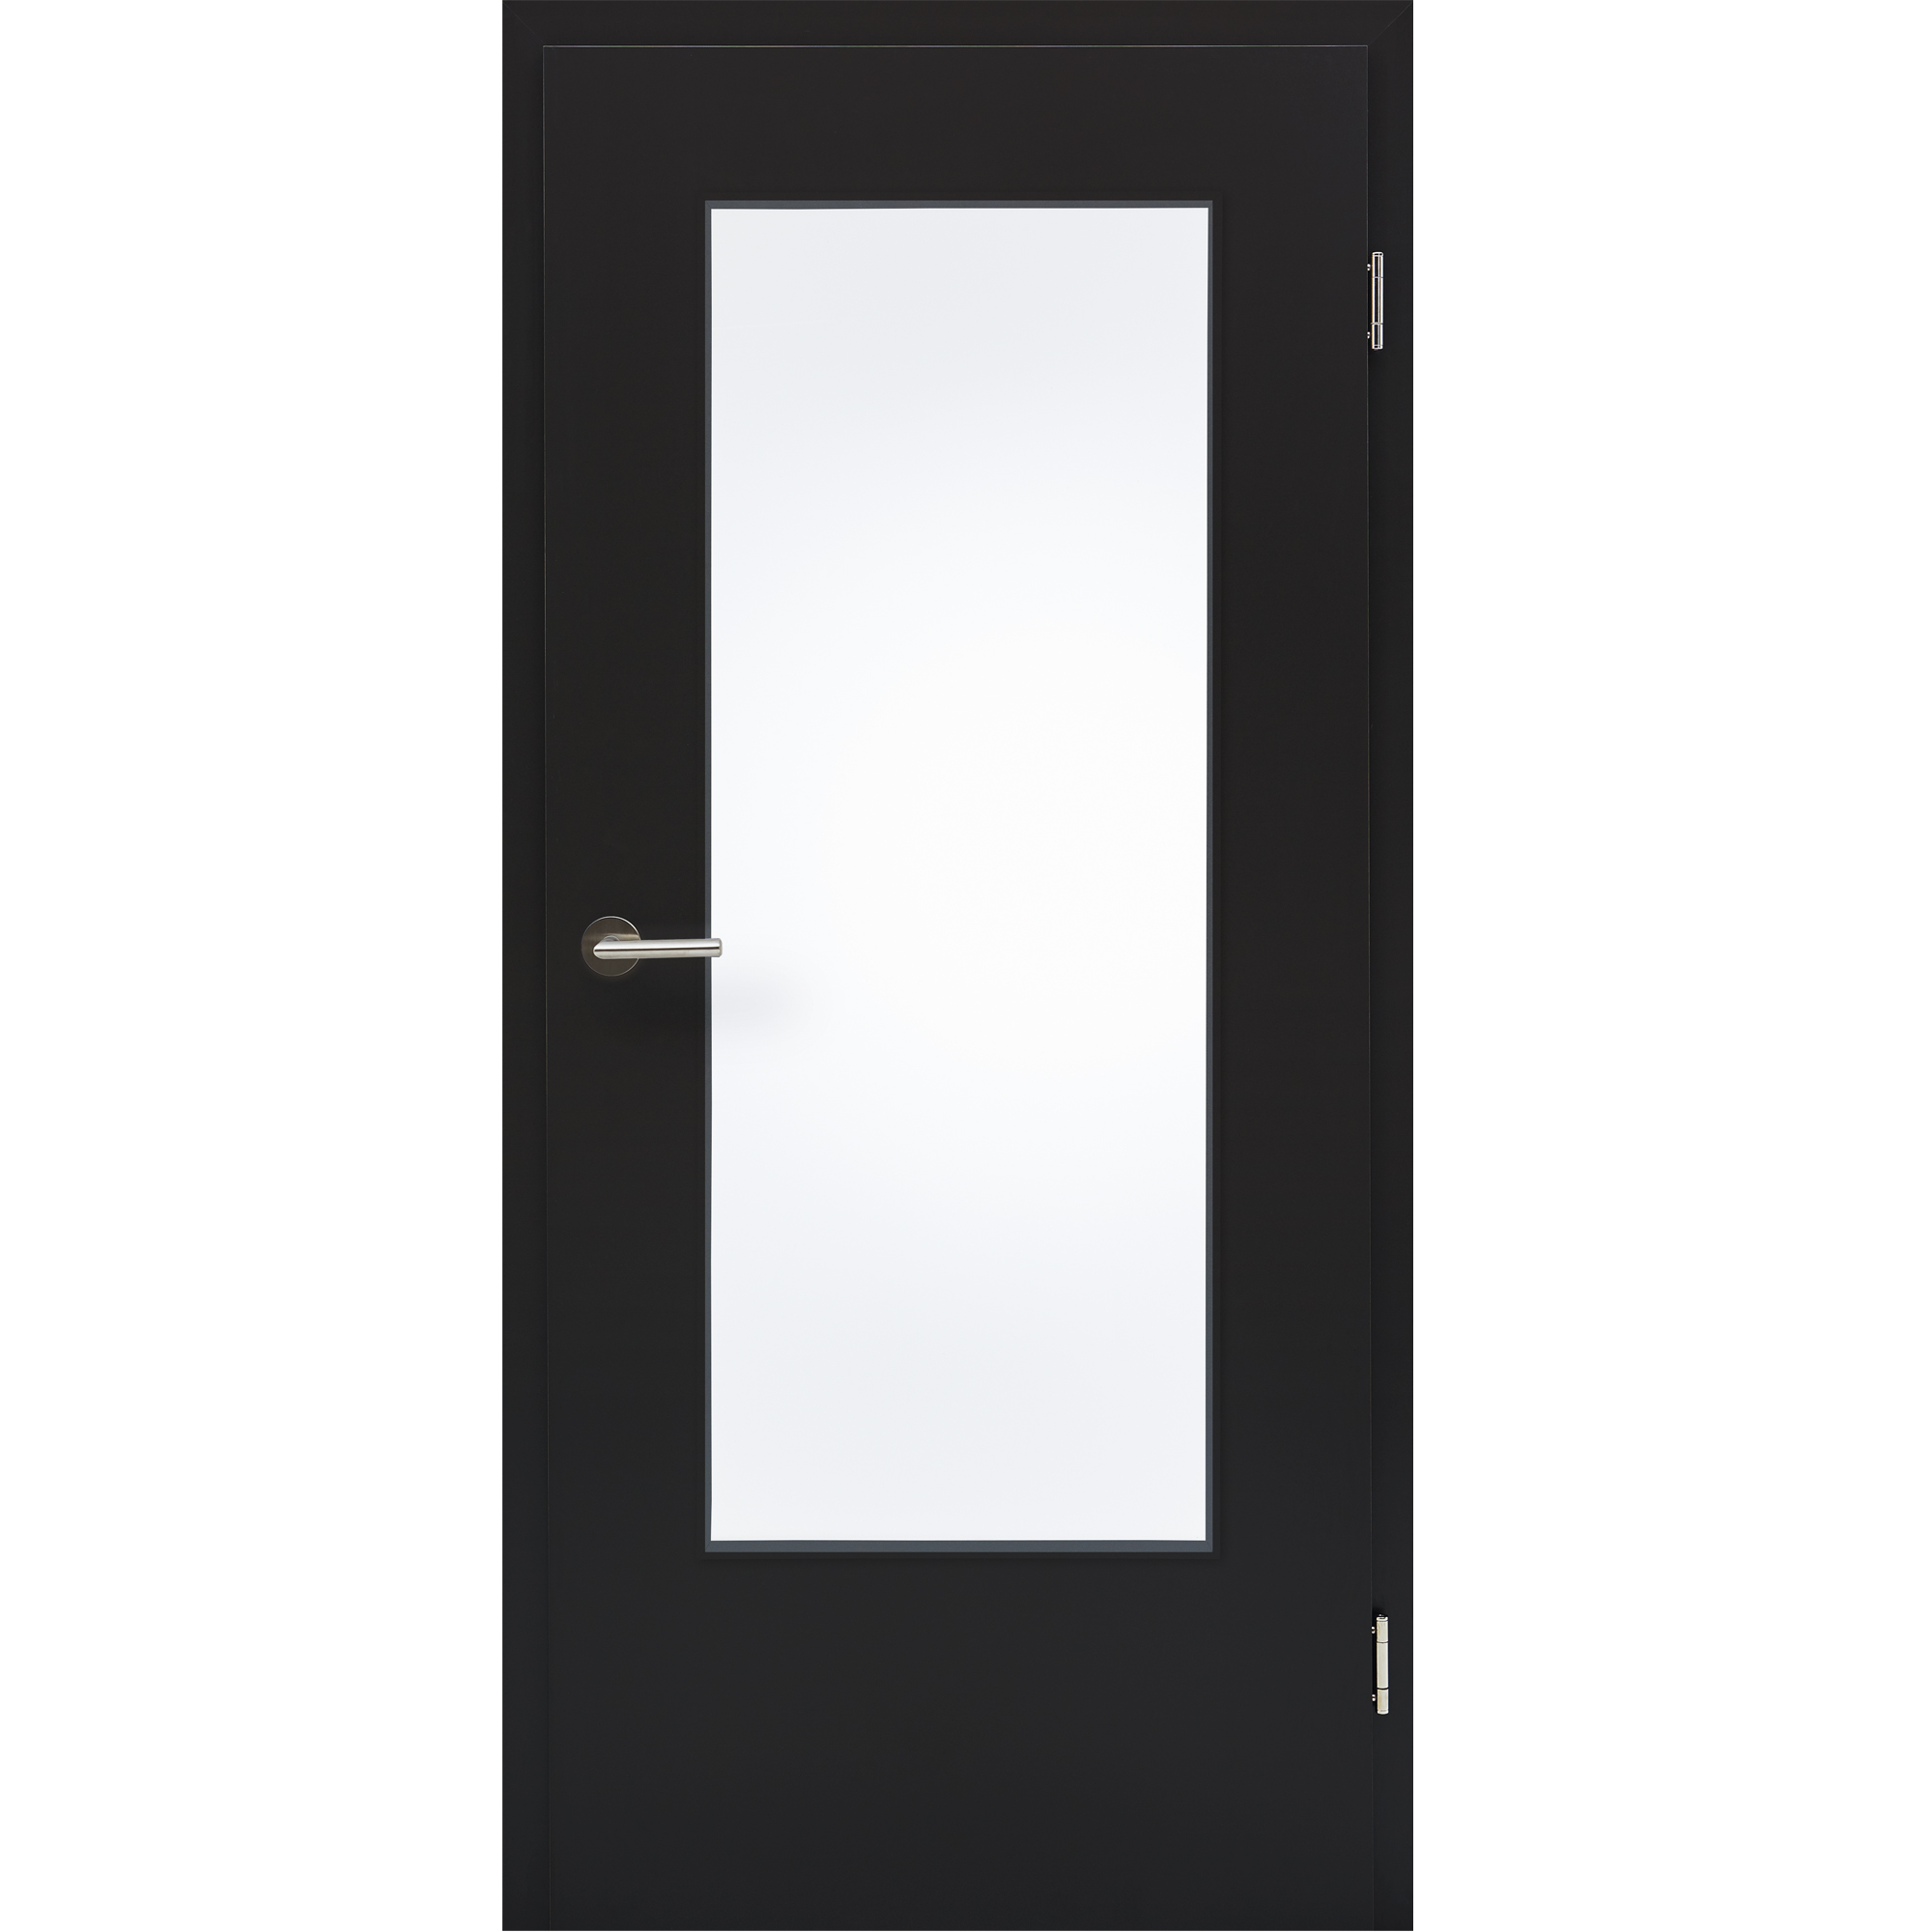 Zimmertür mit Zarge CPL Orca DIN Lichtausschnitt Eckkante - KP Holz Shop |  Haustüren, Zimmertüren und Böden günstig